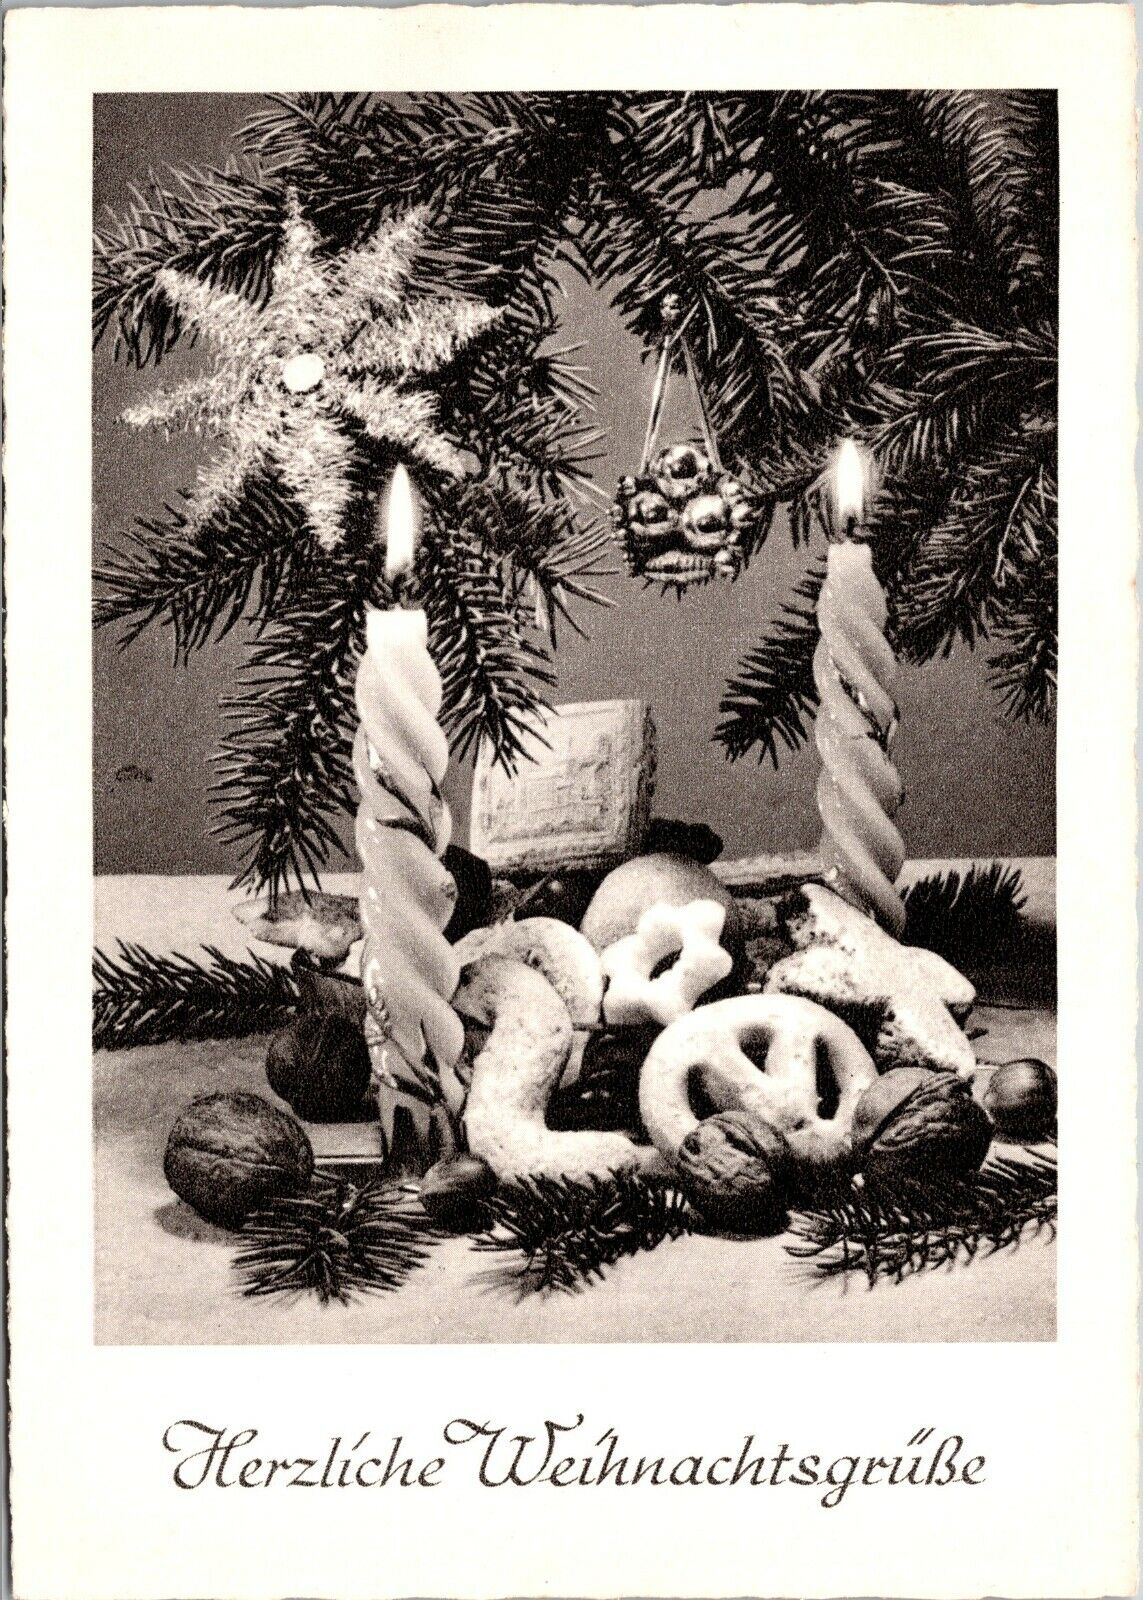 Vtg German Postcard Herzliche Weihnachtgrusse (Warm Christmas Greetings) Tree